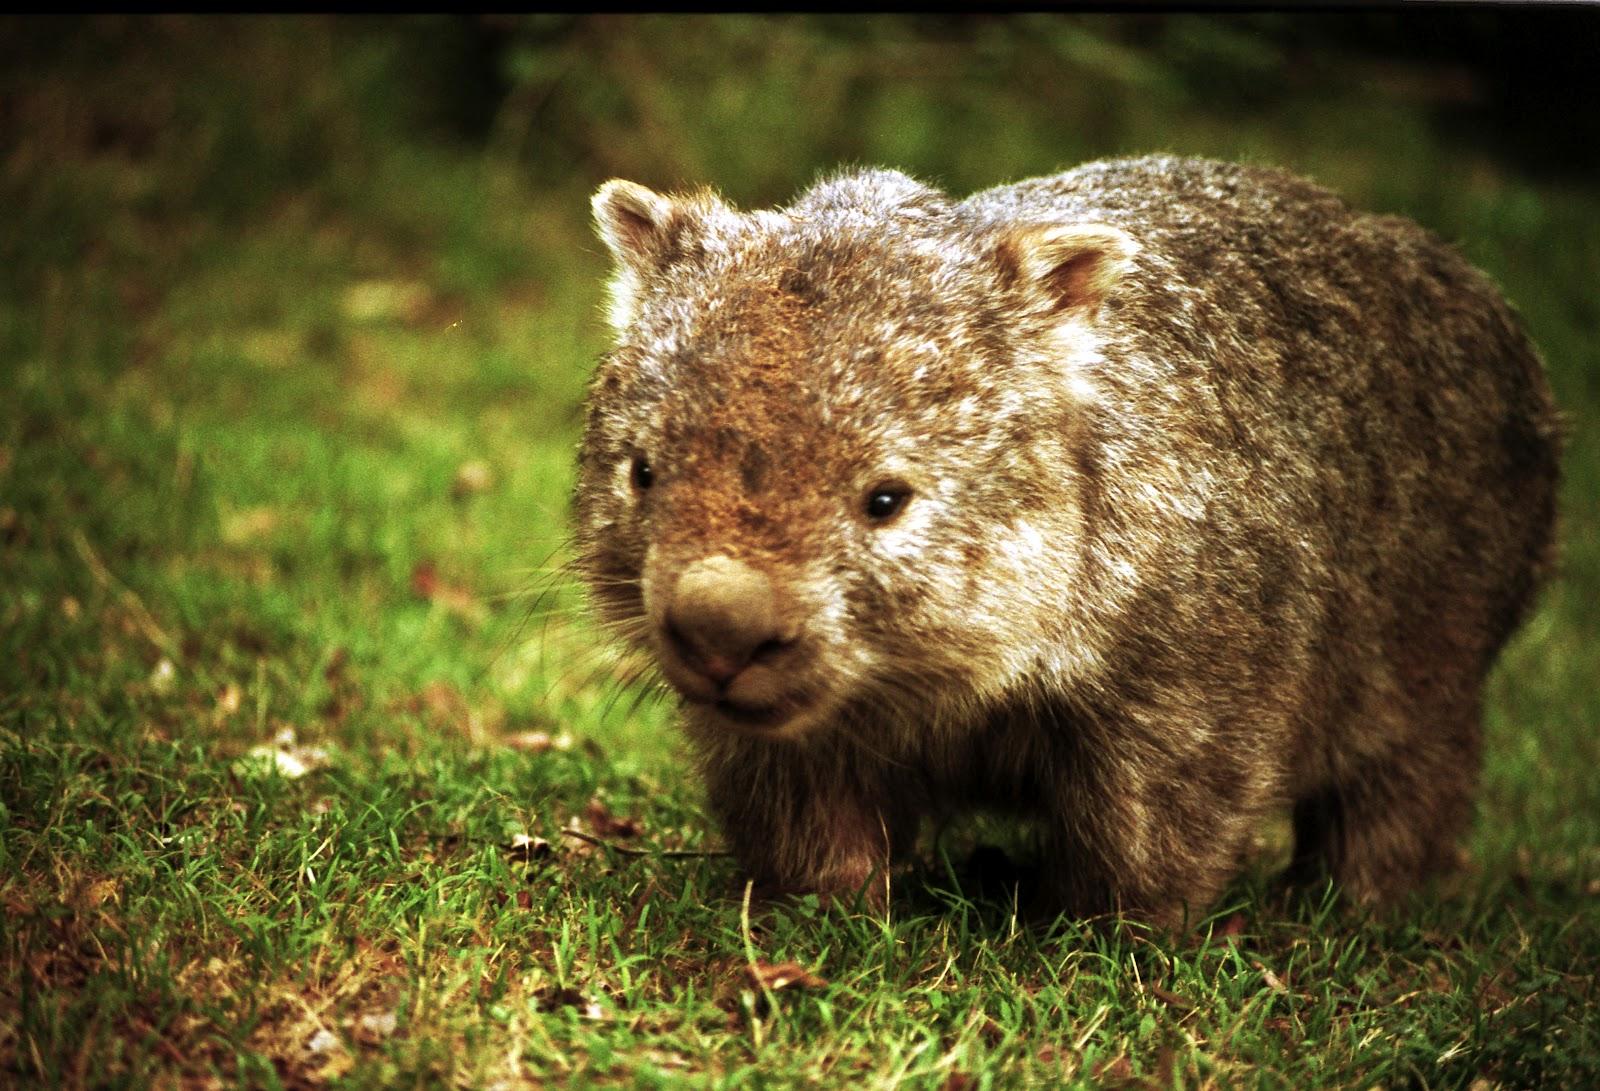 Poto wombat